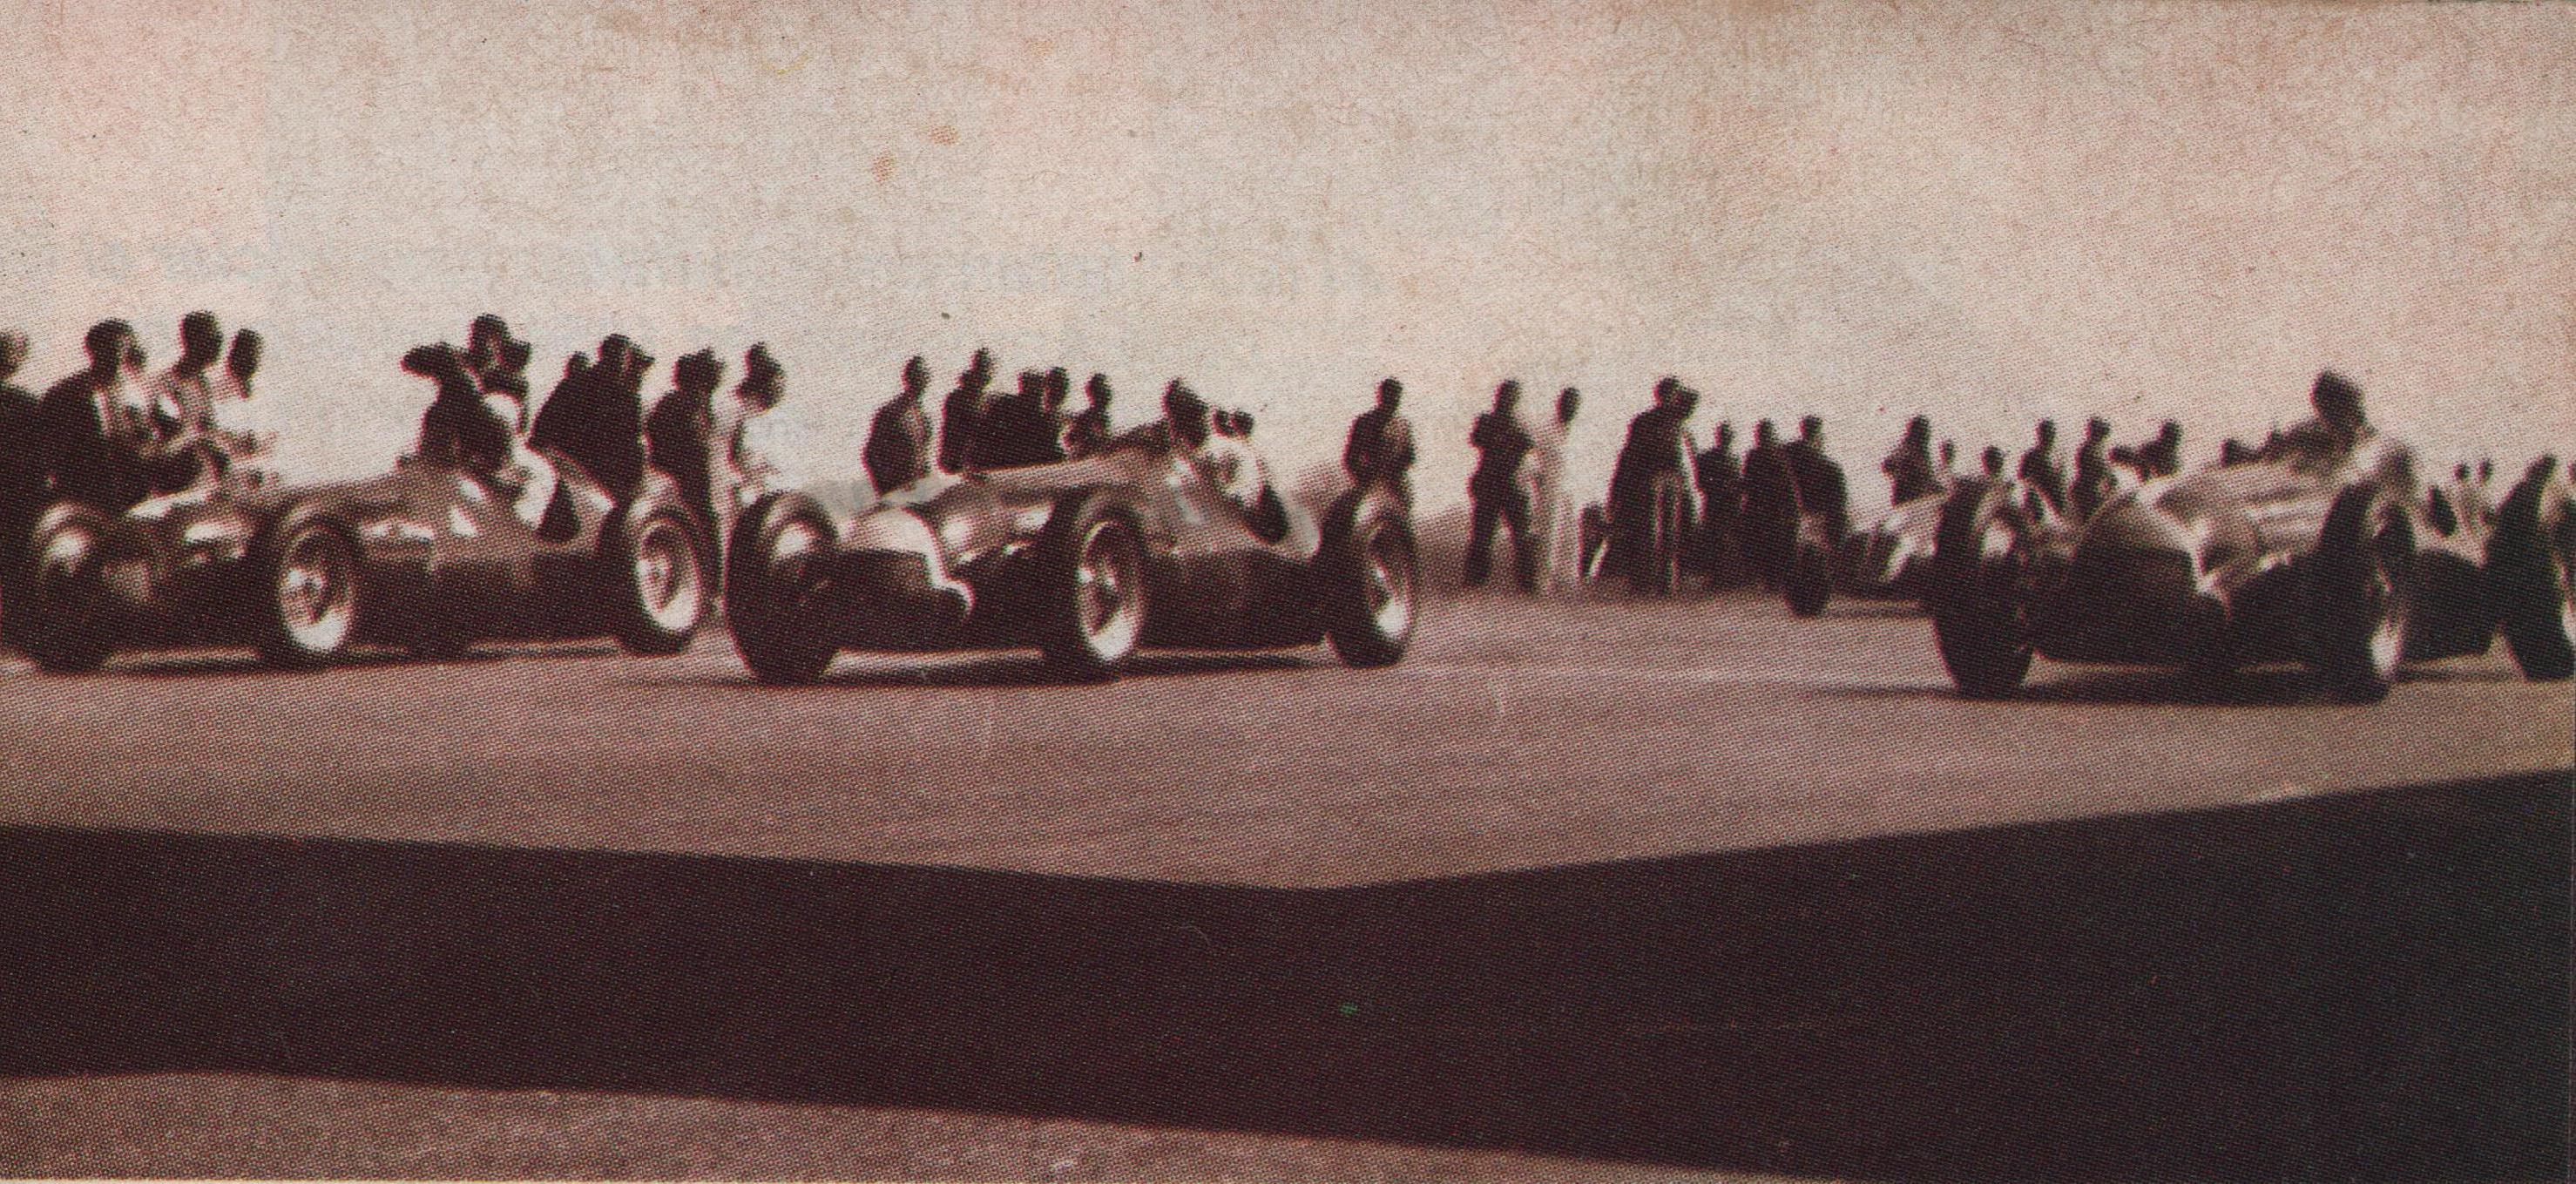 Largada en Silverstone en 1950. Trío de Alfa Romeo. De izquierda a derecha: Juan Manuel Fangio, Luigi Fagioli y Giuseppe Farina. 